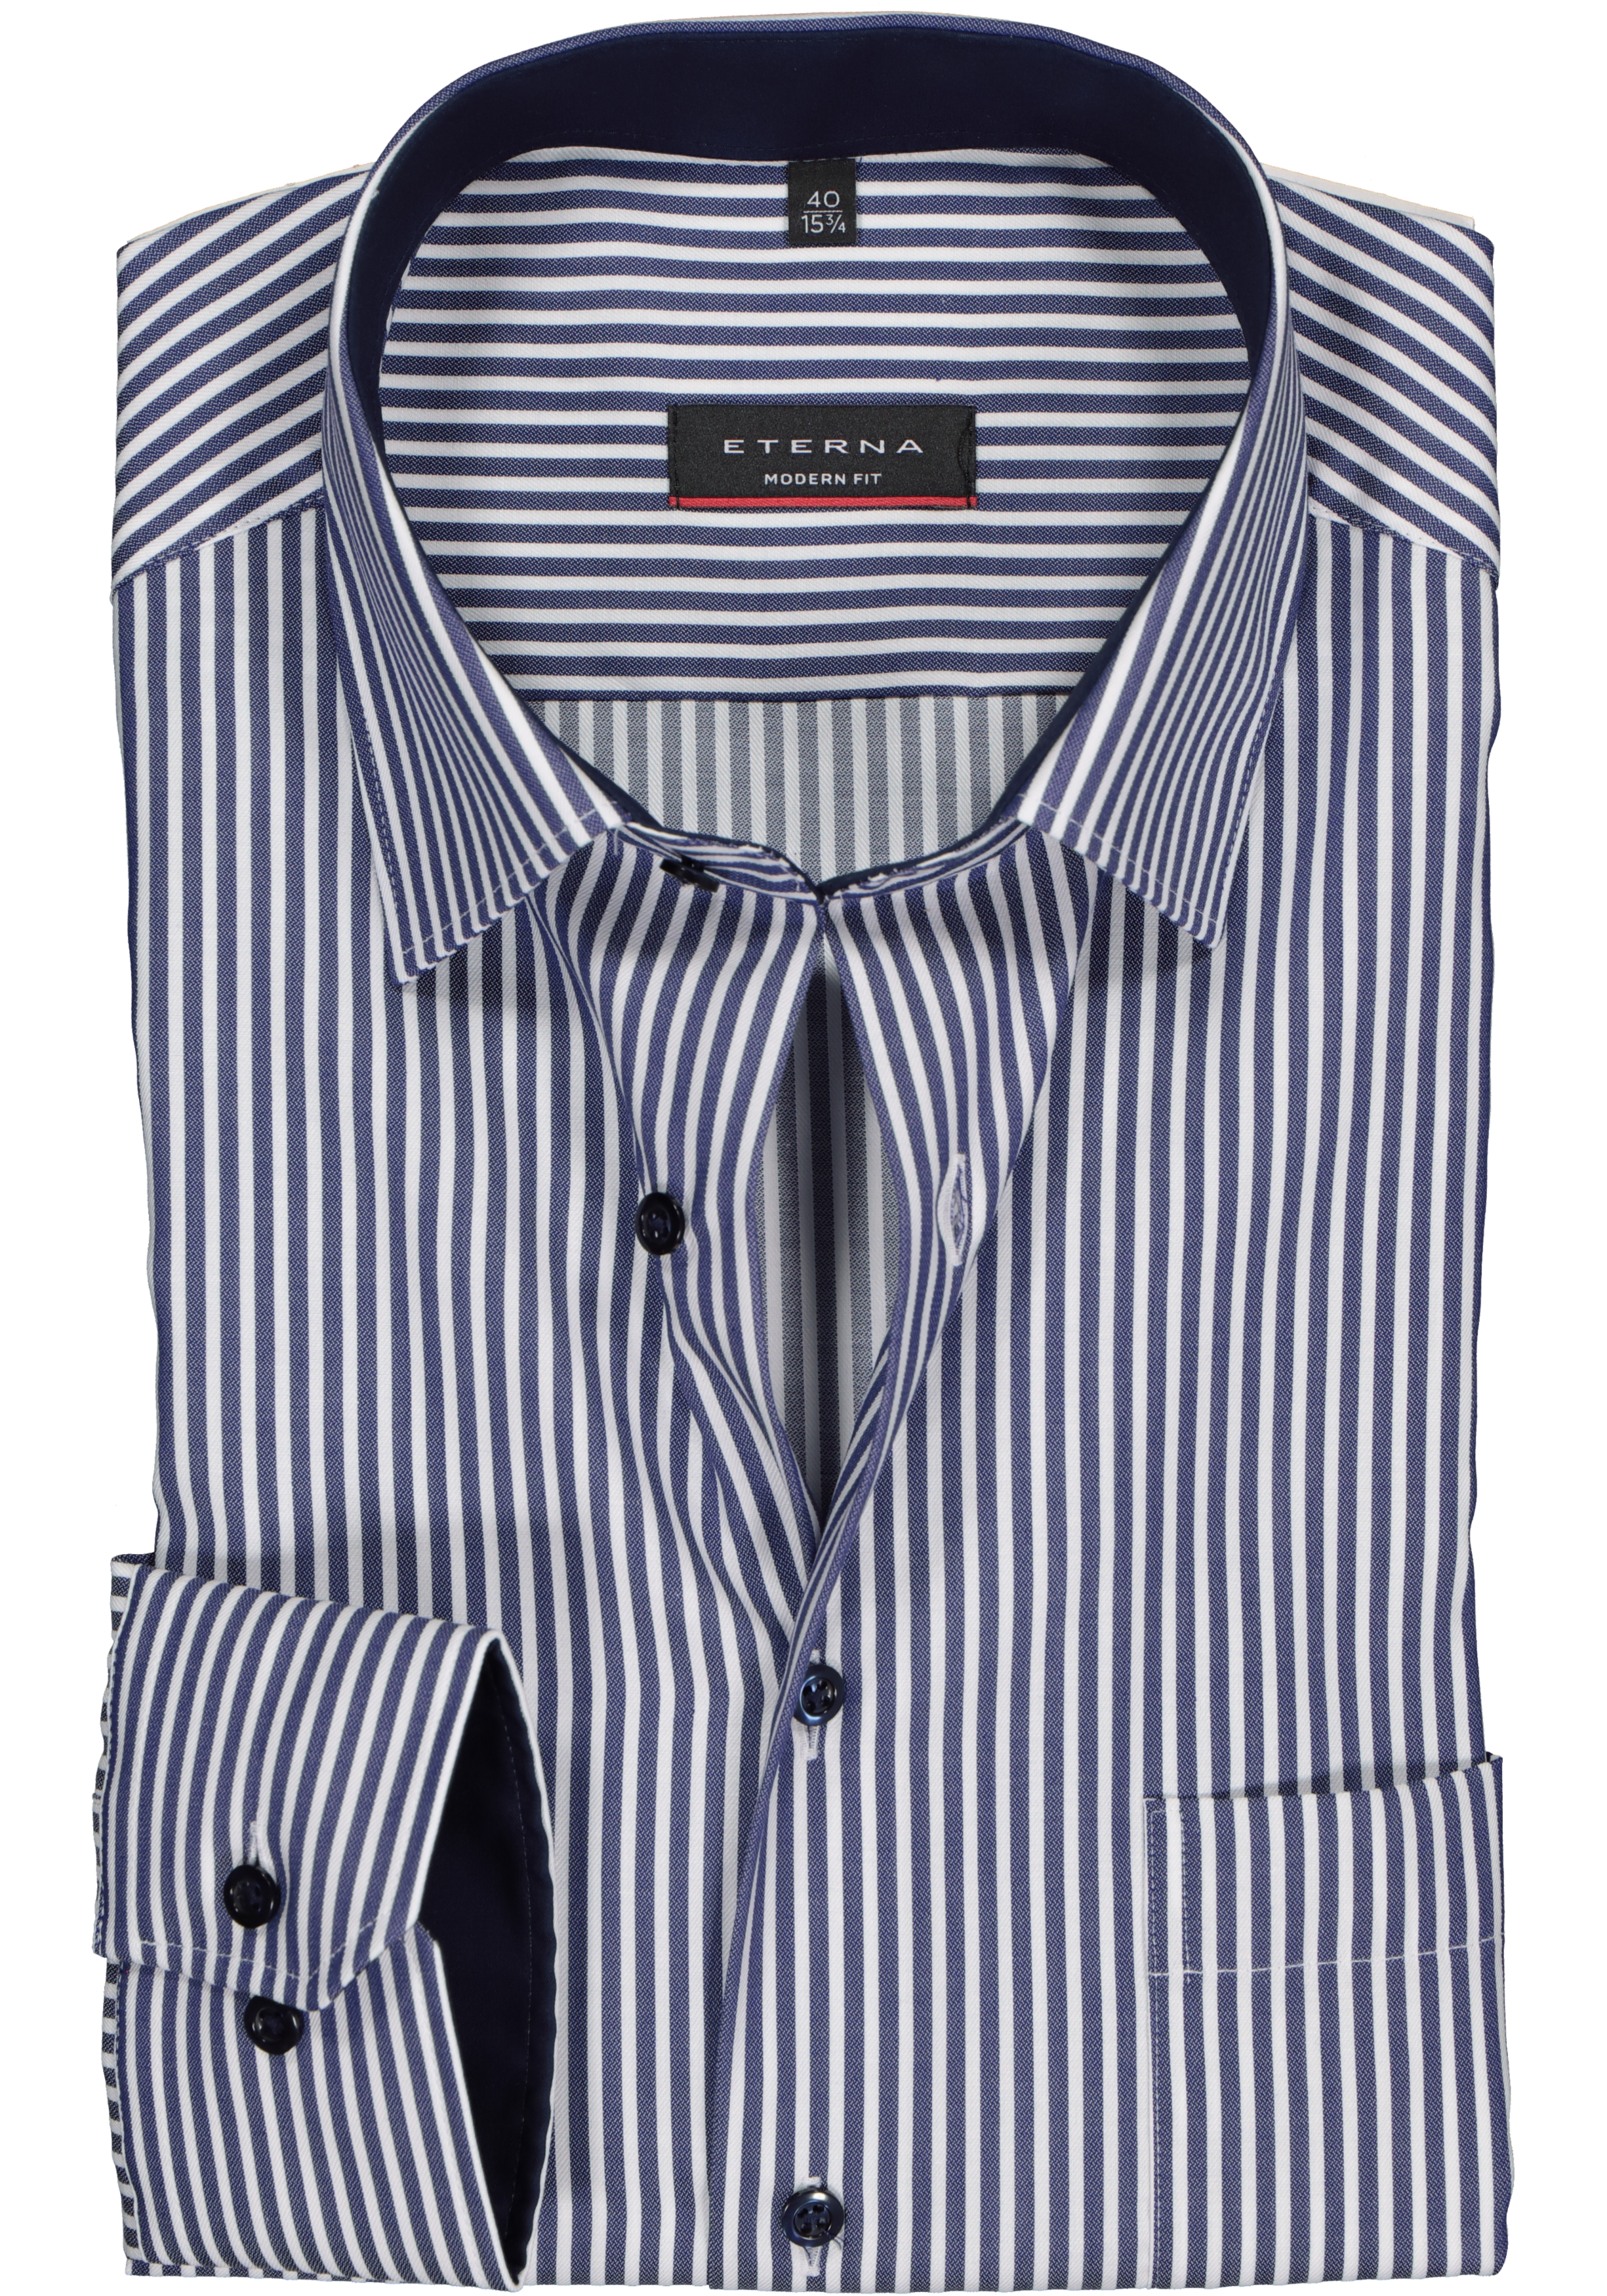 ETERNA modern fit overhemd, twill heren overhemd, blauw met wit gestreept (blauw contrast)  